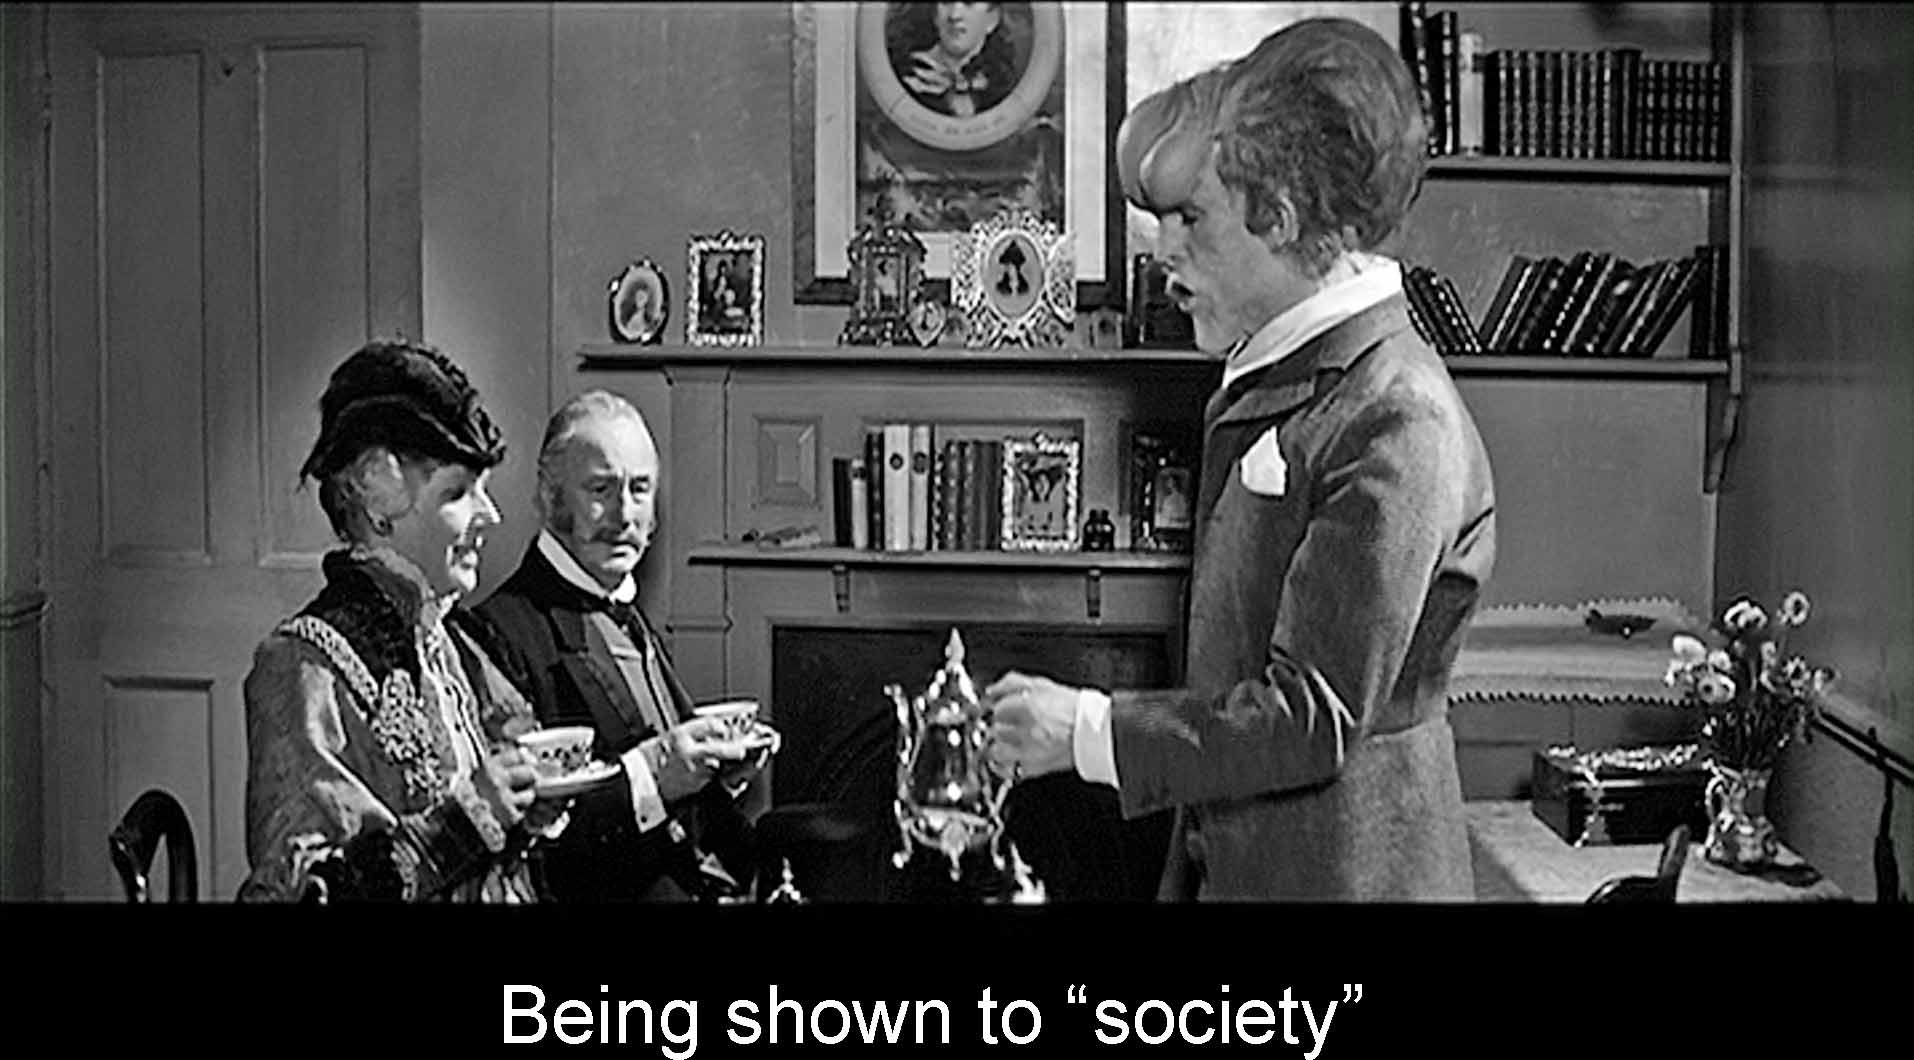 Merrick and society